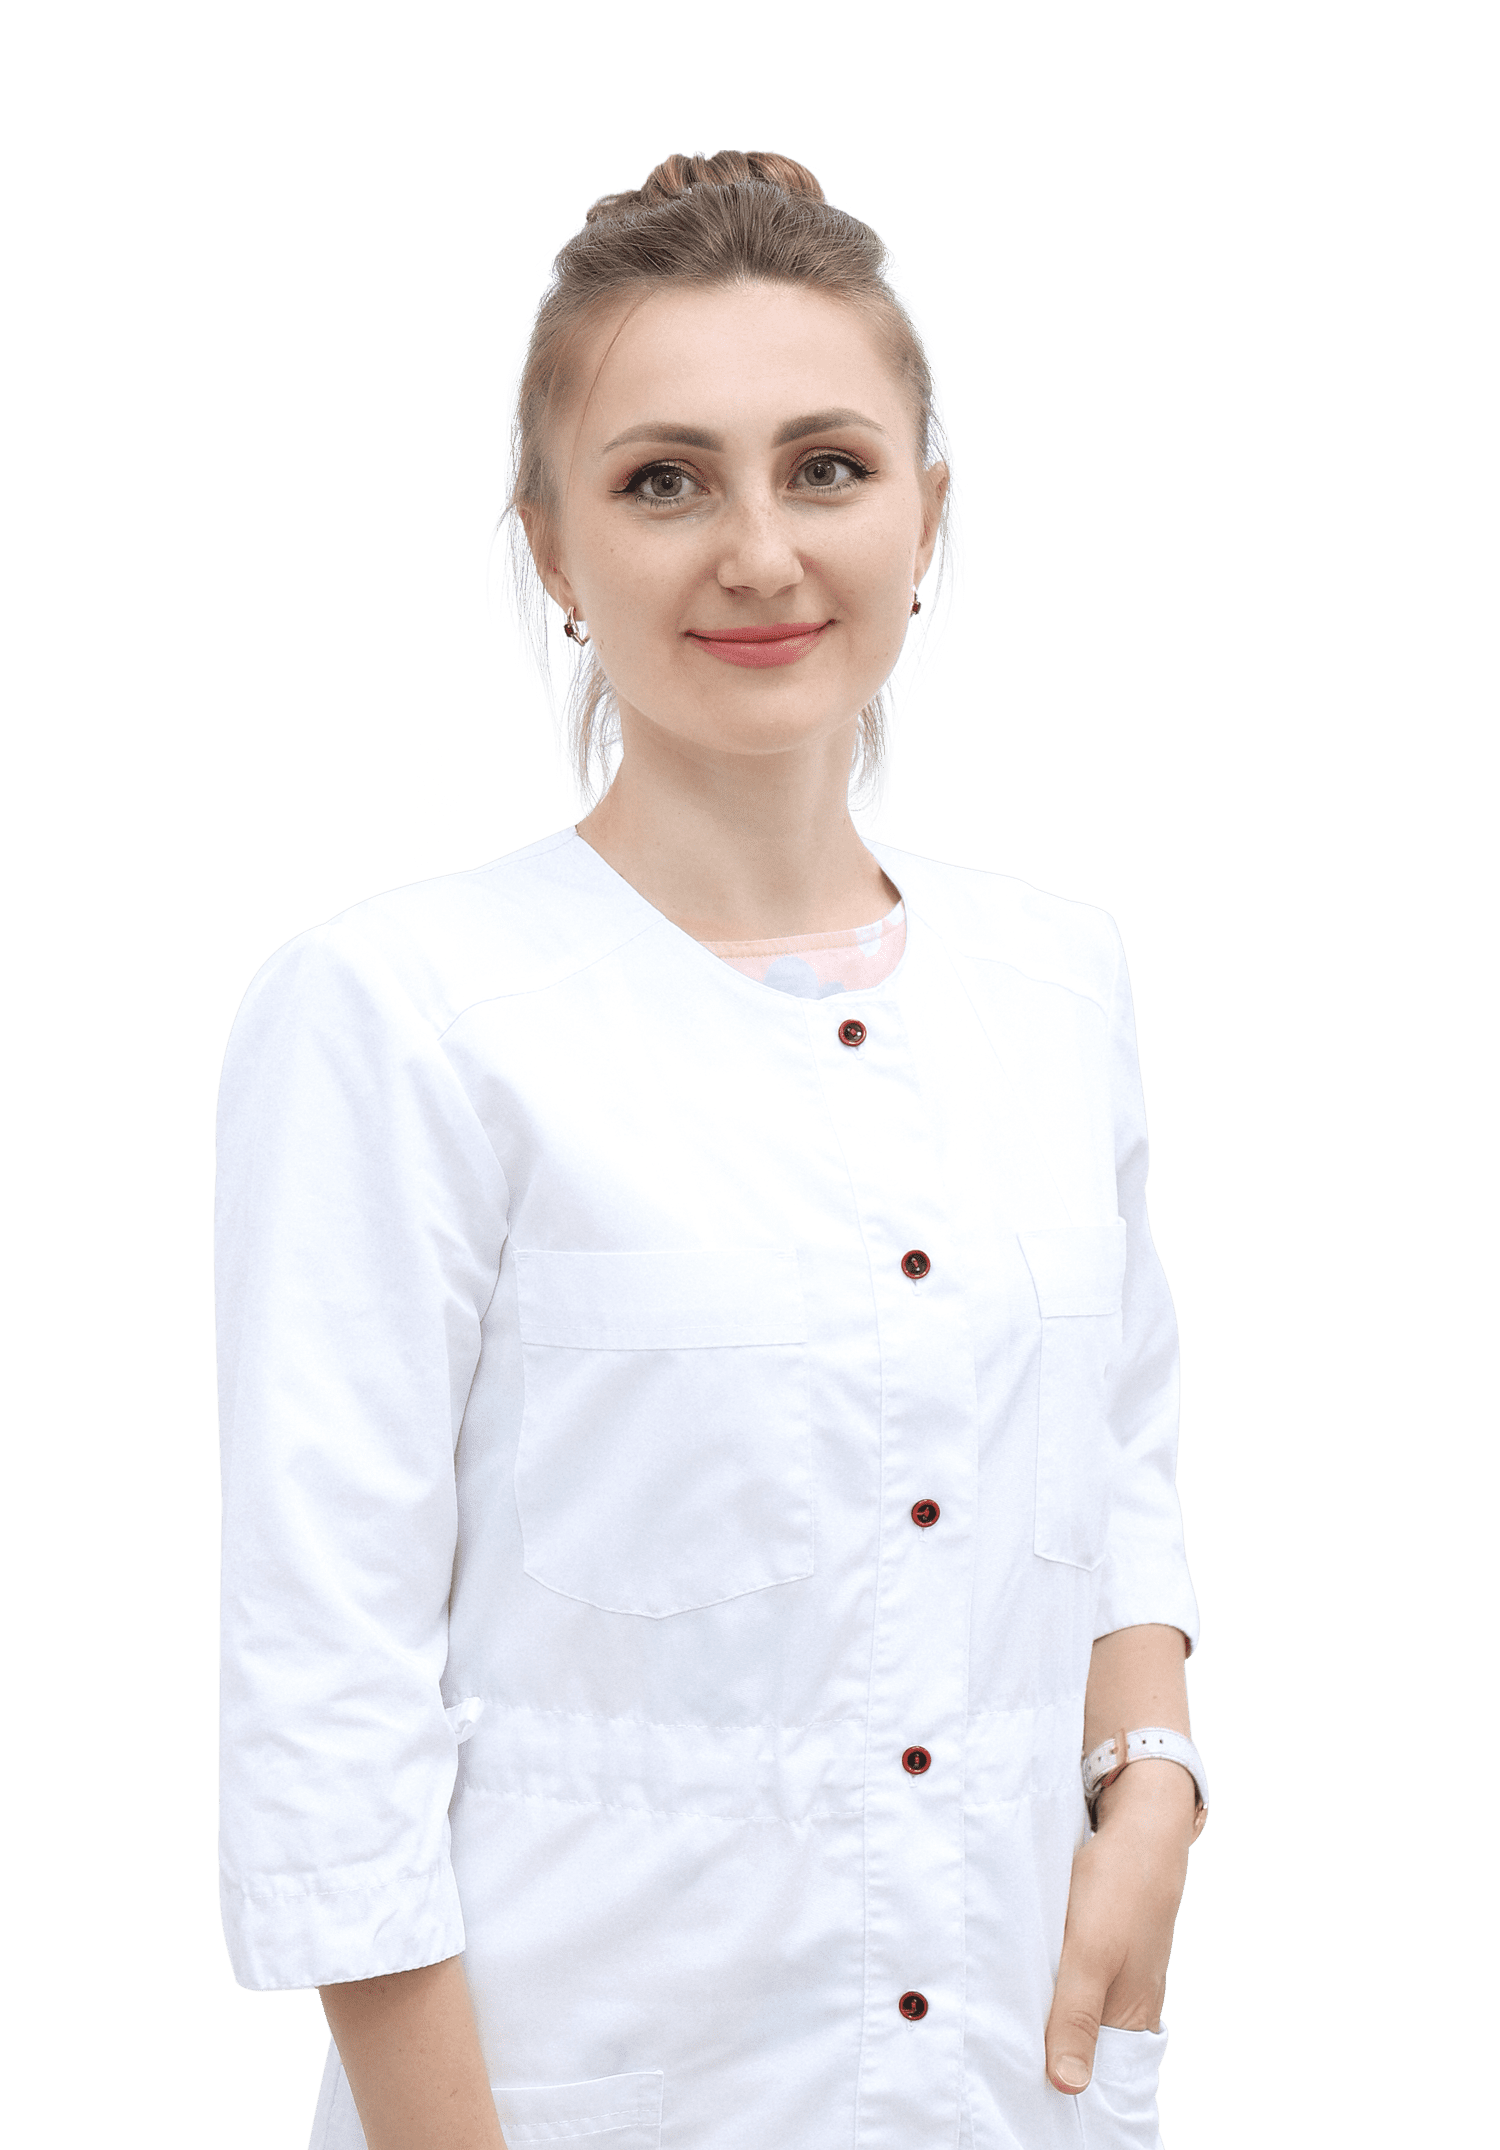 Коваленко Виктория Юрьевна